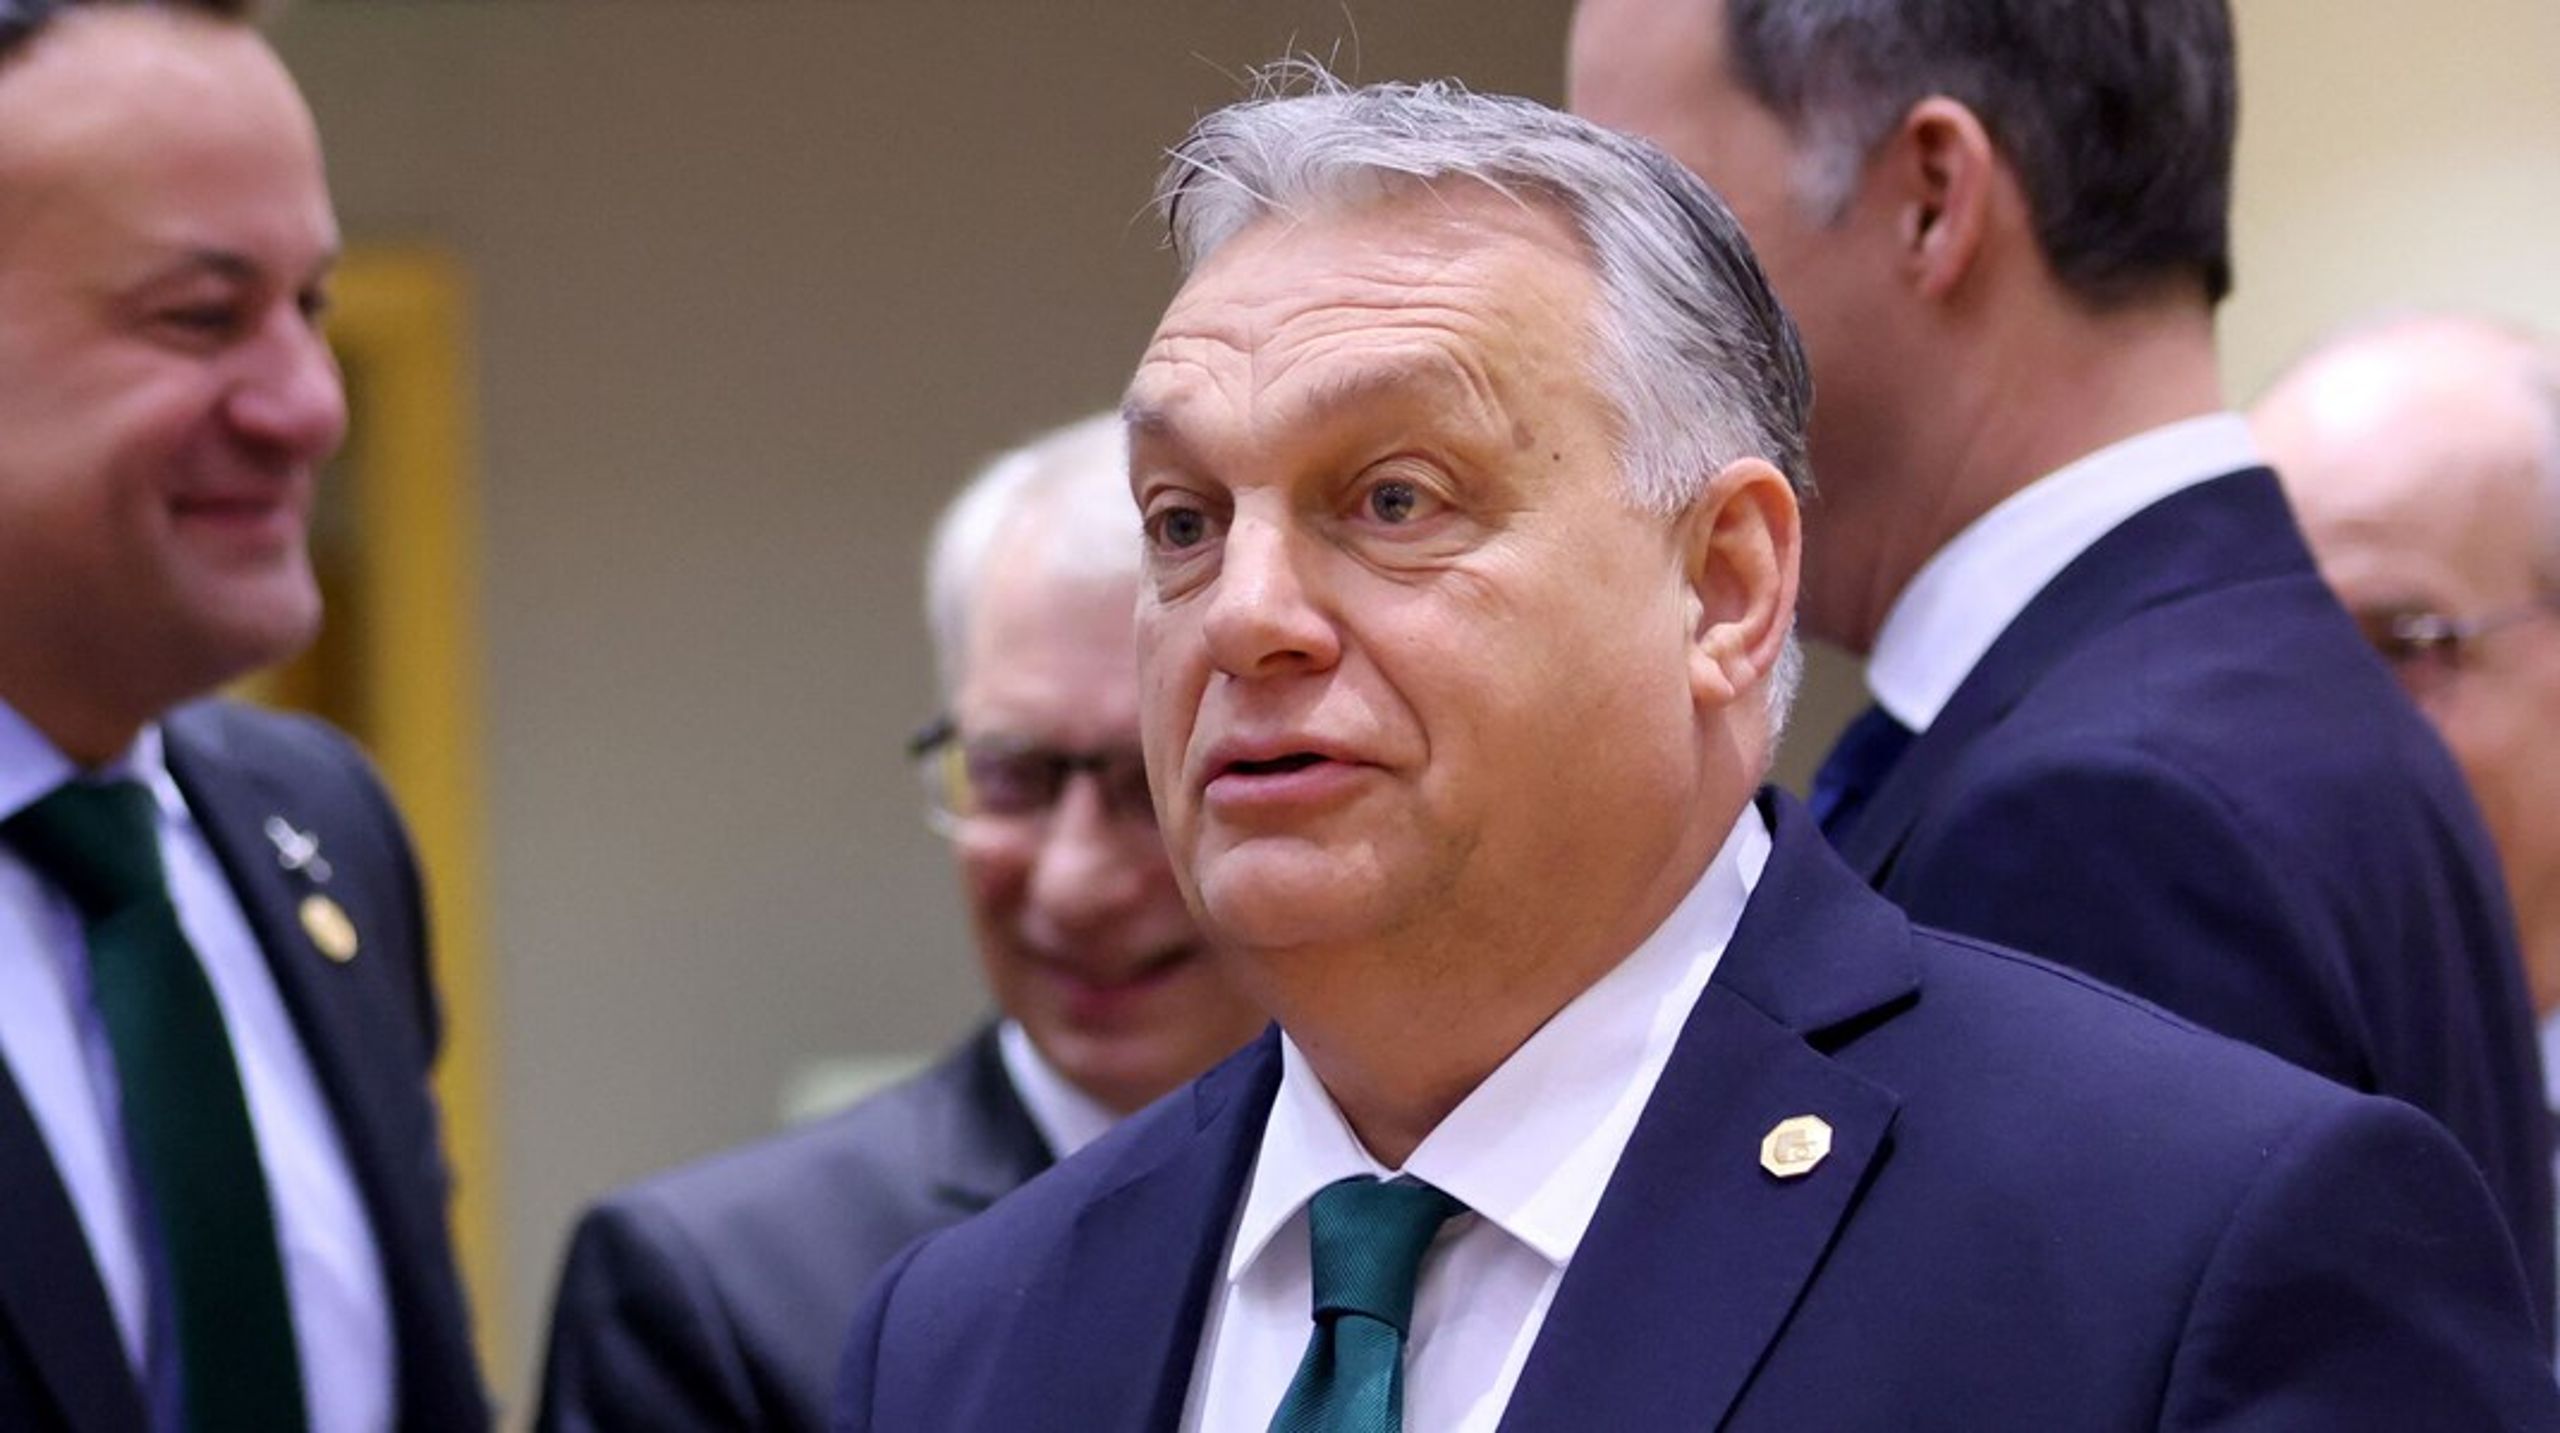 Ungarns leder, Viktor Orbán, er efterhånden blevet temmelig upopulær blandt de andre europæiske ledere, fordi han gang på gang forsinker fælles beslutninger.